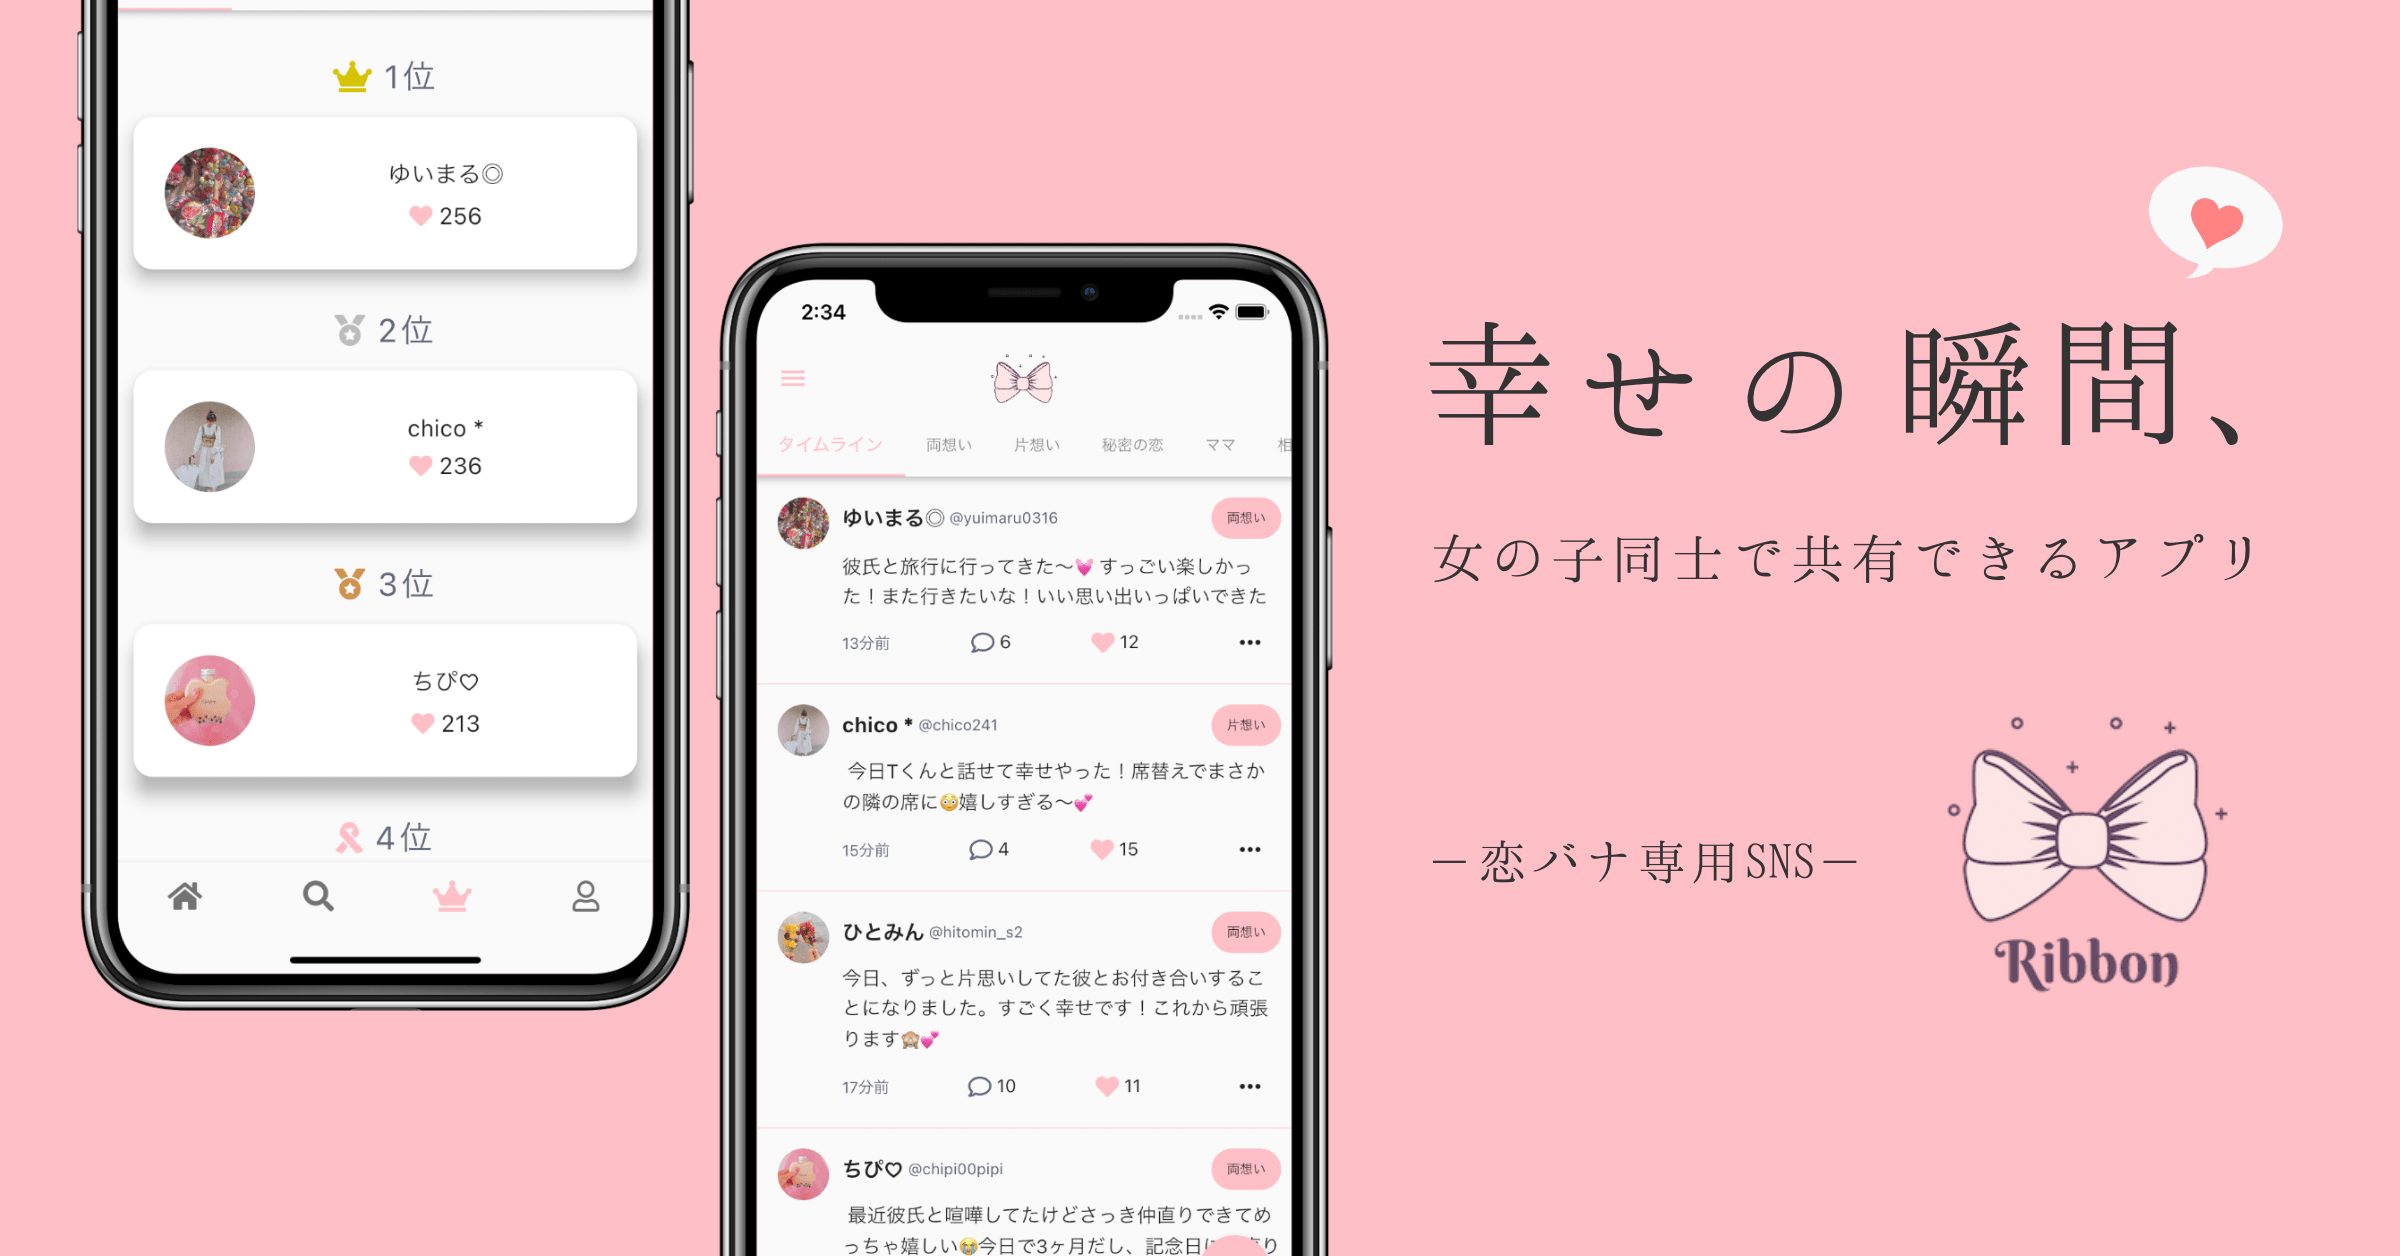 恋バナ専用 Snsアプリ Ribbon が新登場 ディベロッパー 井上 将志のプレスリリース